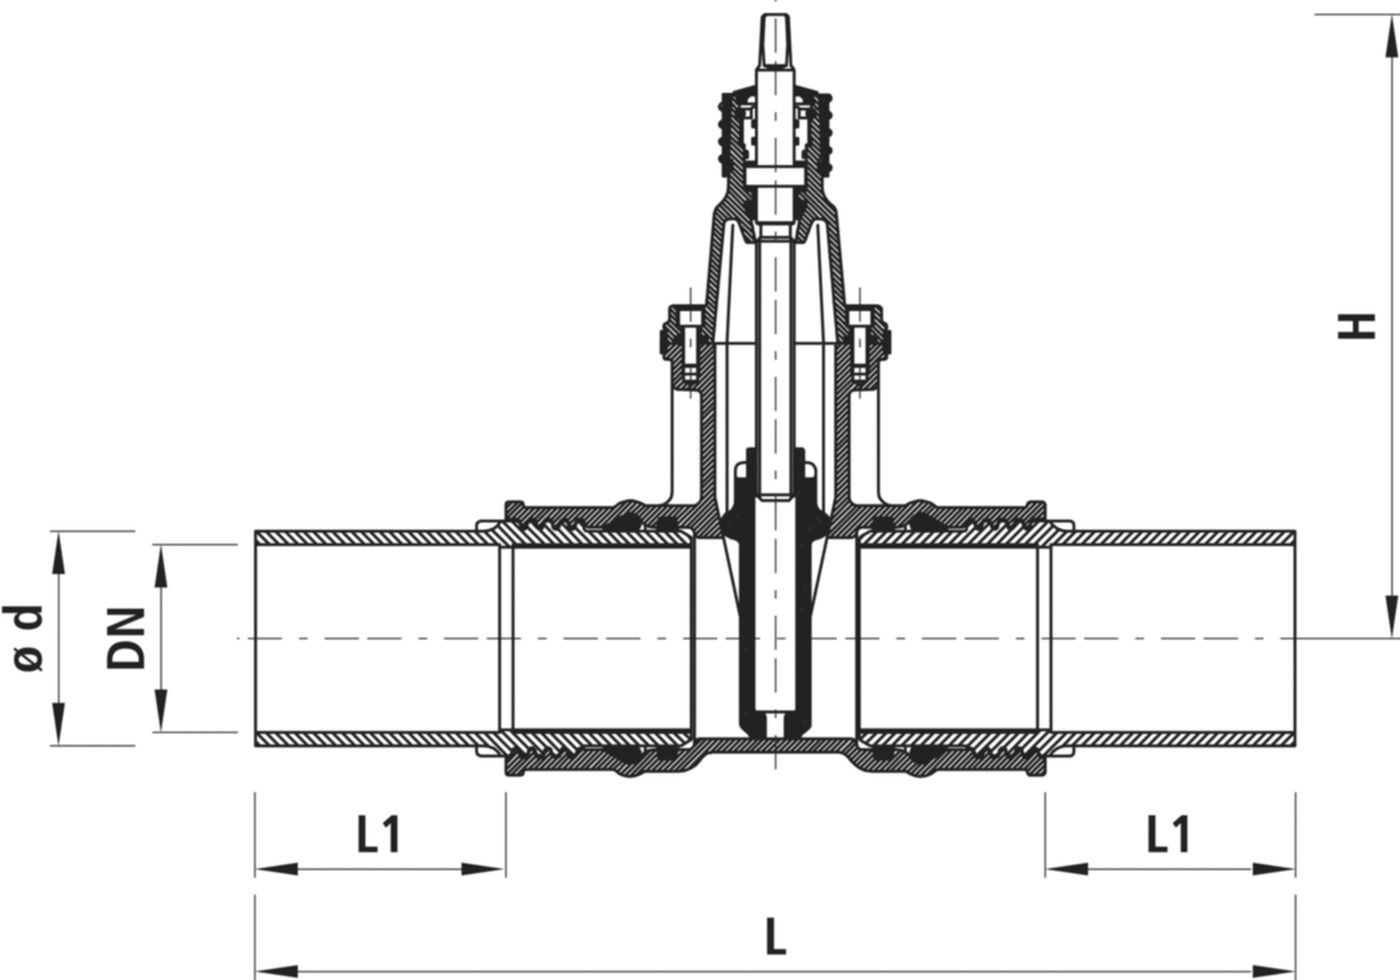 Einschweiss-Schieber für Gas S8 4816 DN 200 / d 225mm - Hawle Armaturen